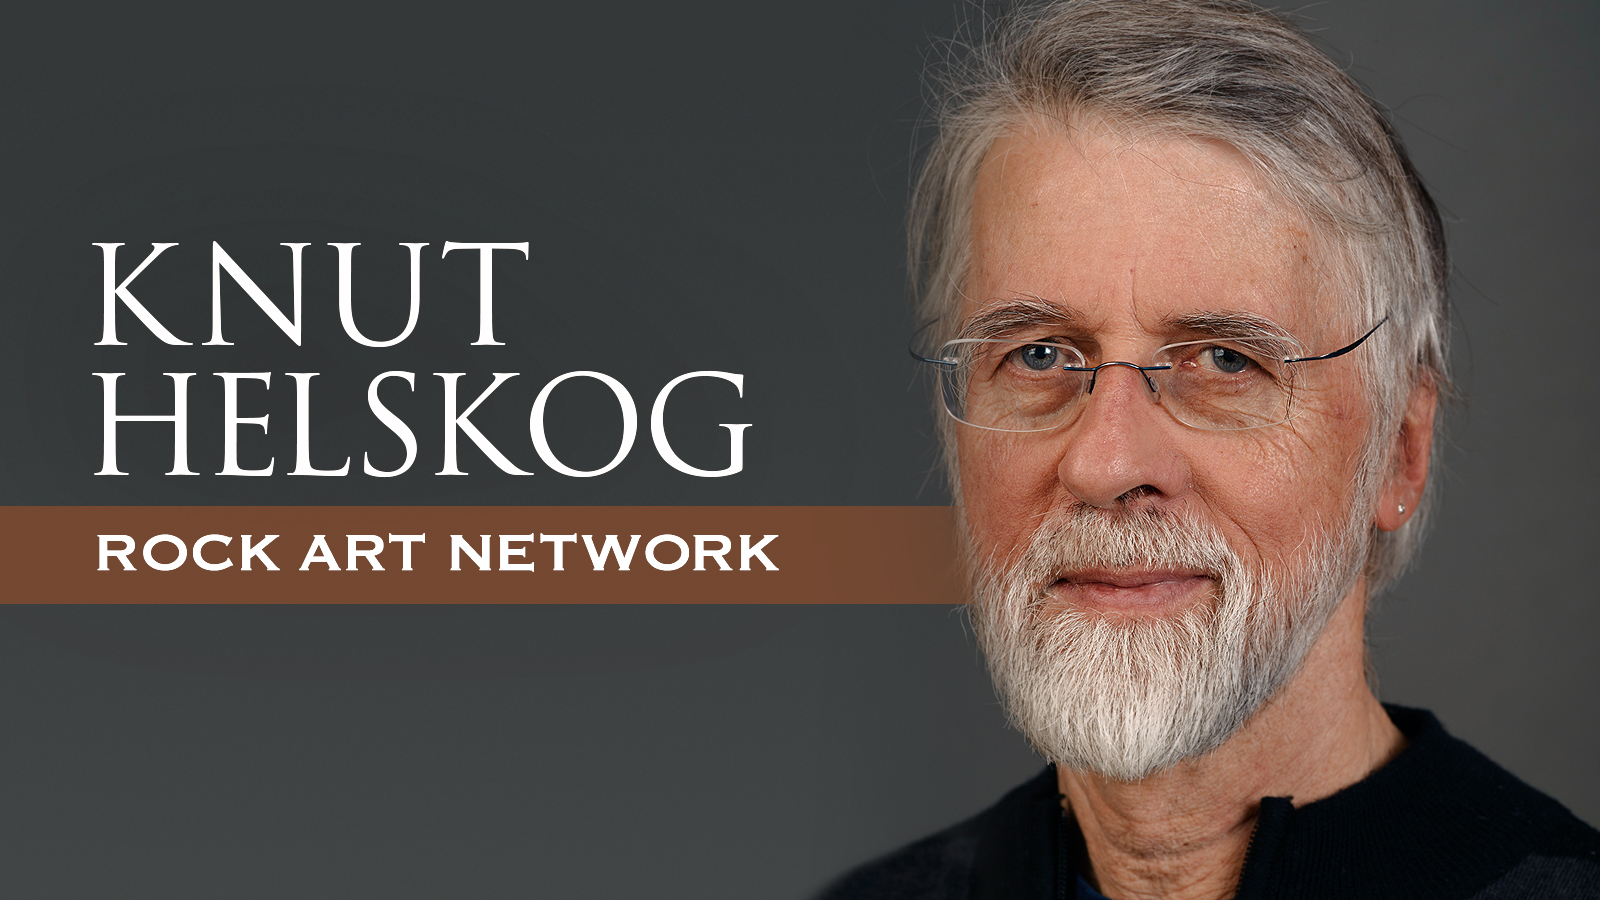 The Rock Art Network Knut Helskog